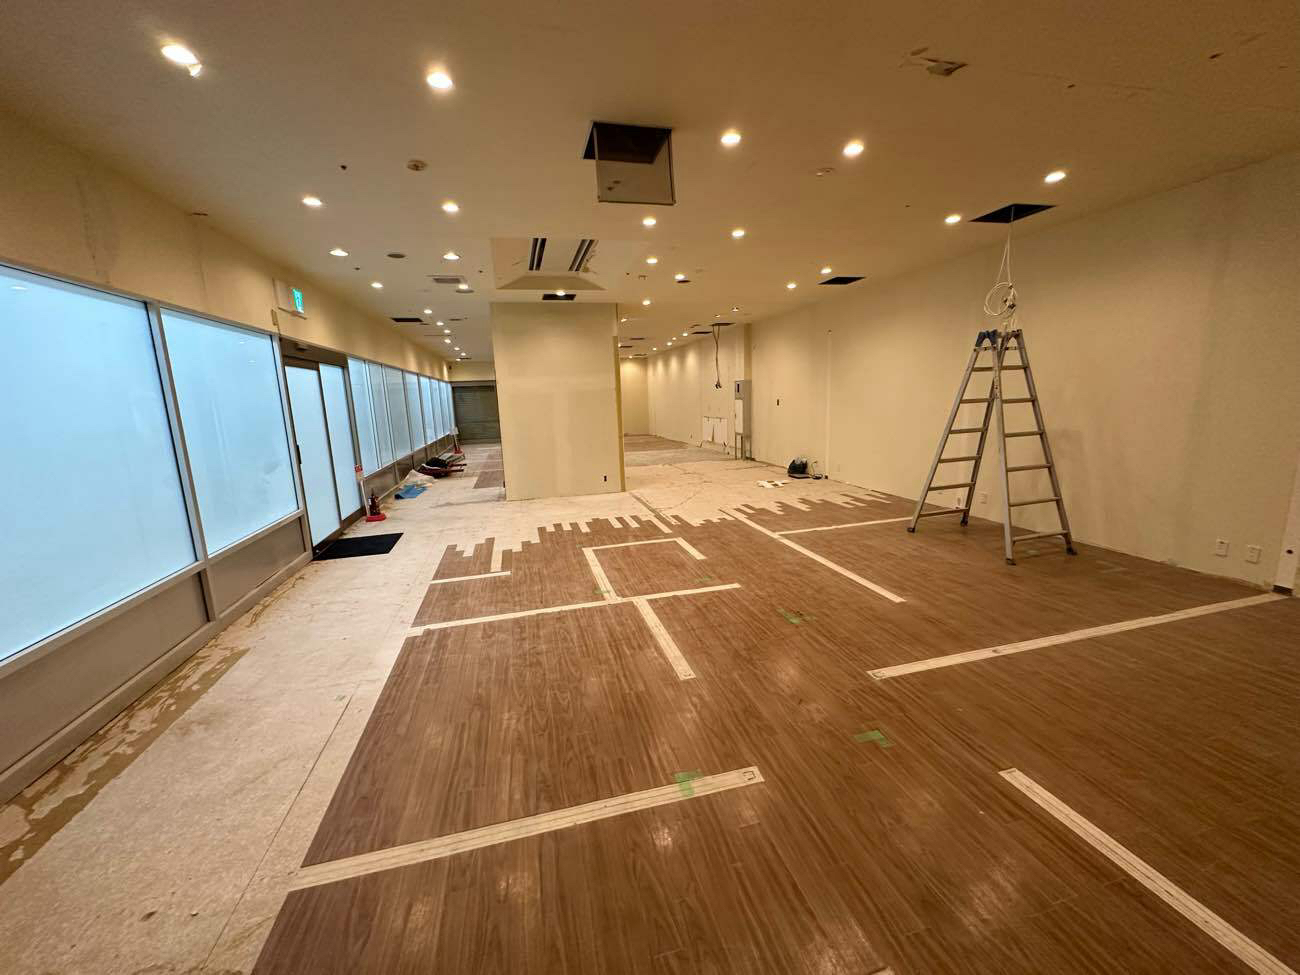 神奈川県厚木市のシミュレーションゴルフ場店舗にて、ハイブリット置床工事を行いました。（乾式二重床）【秀和建工】